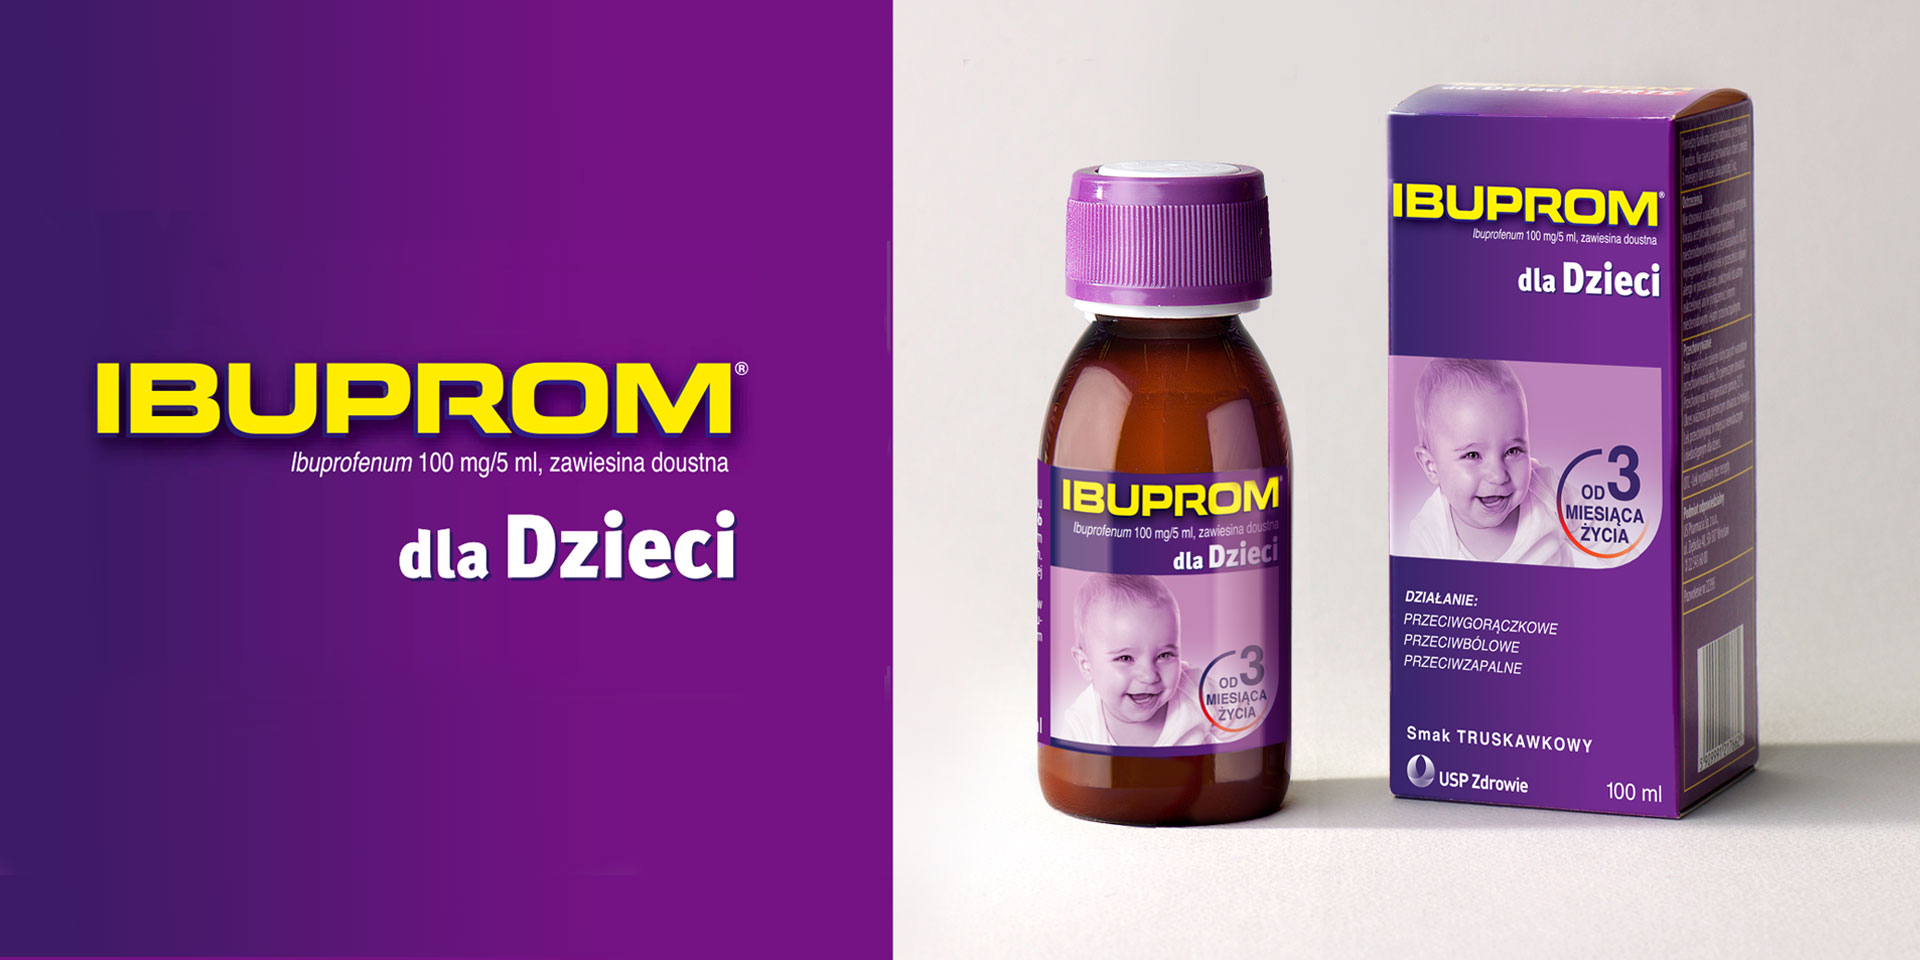 Ibuprom dla dzieci - projektowanie opakowań leków